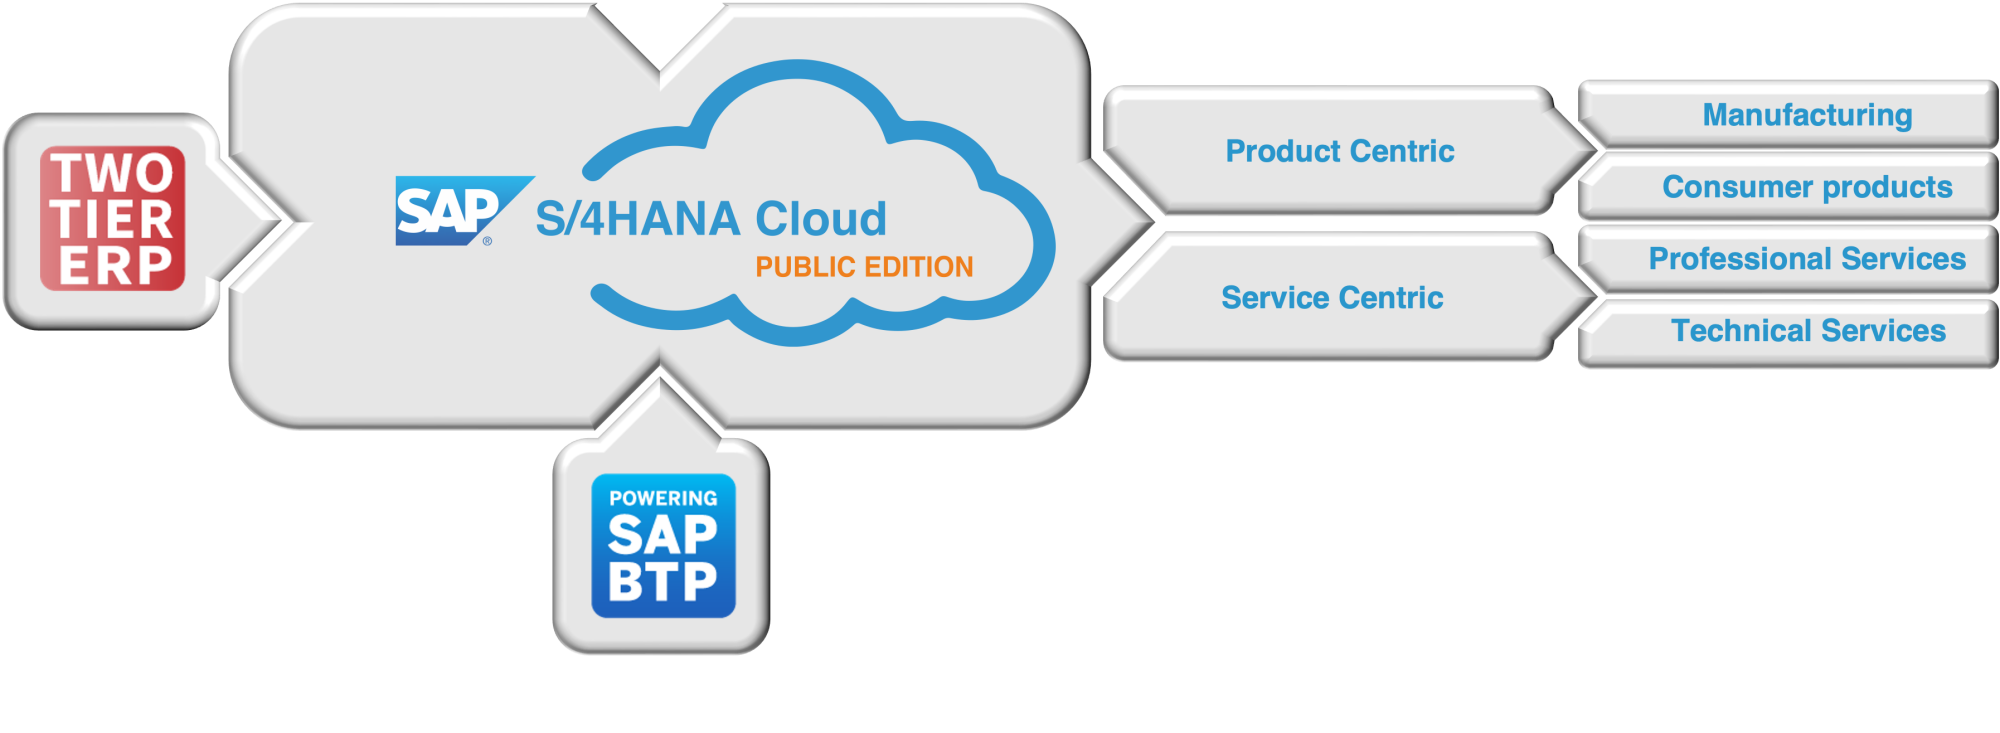 SAP S/4HANA Cloud, Public Edition concept